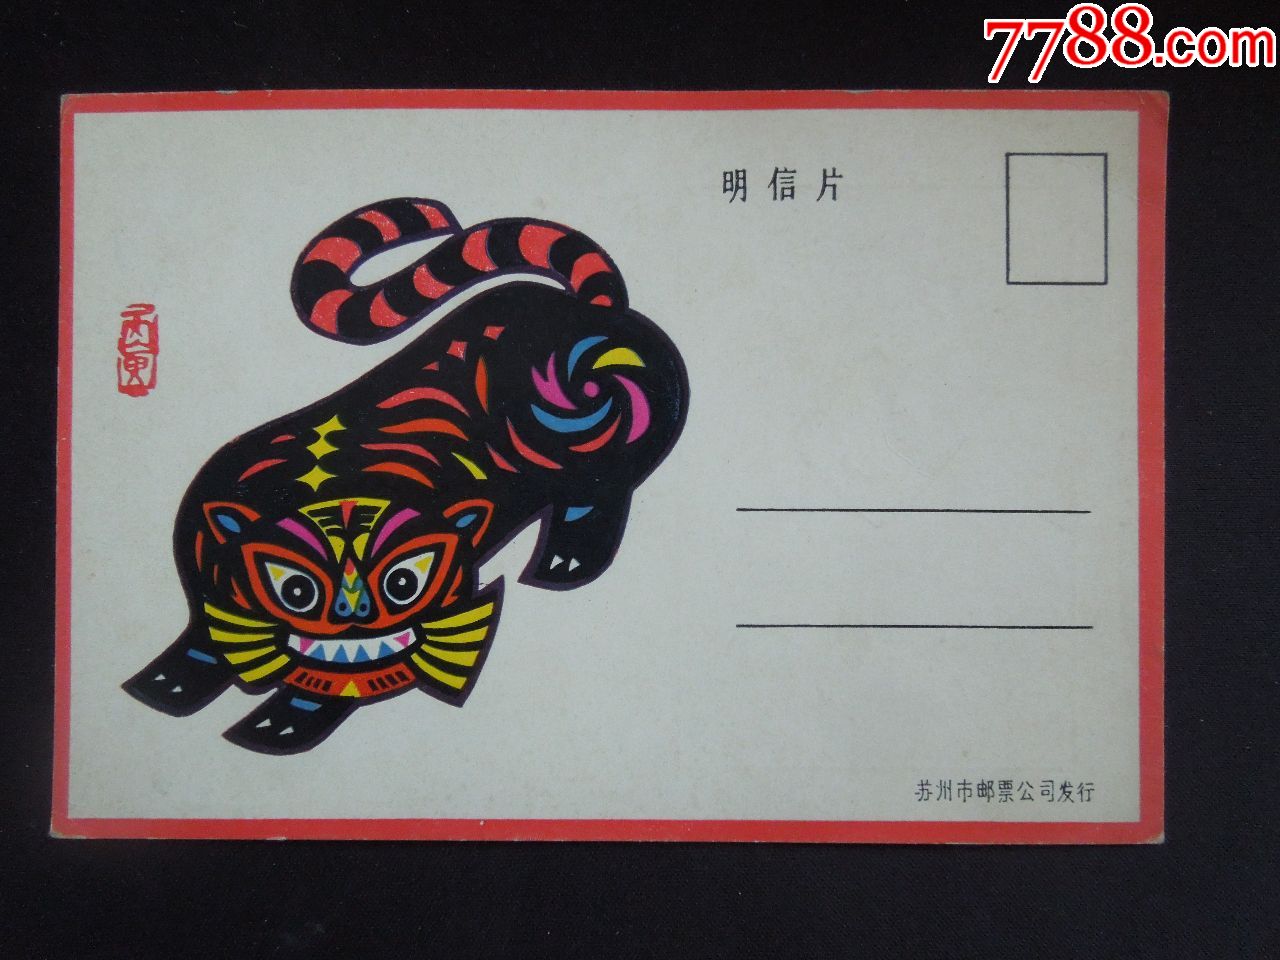 虎/生肖题材明信片1枚(苏州市邮票公司/详见简介及图片)